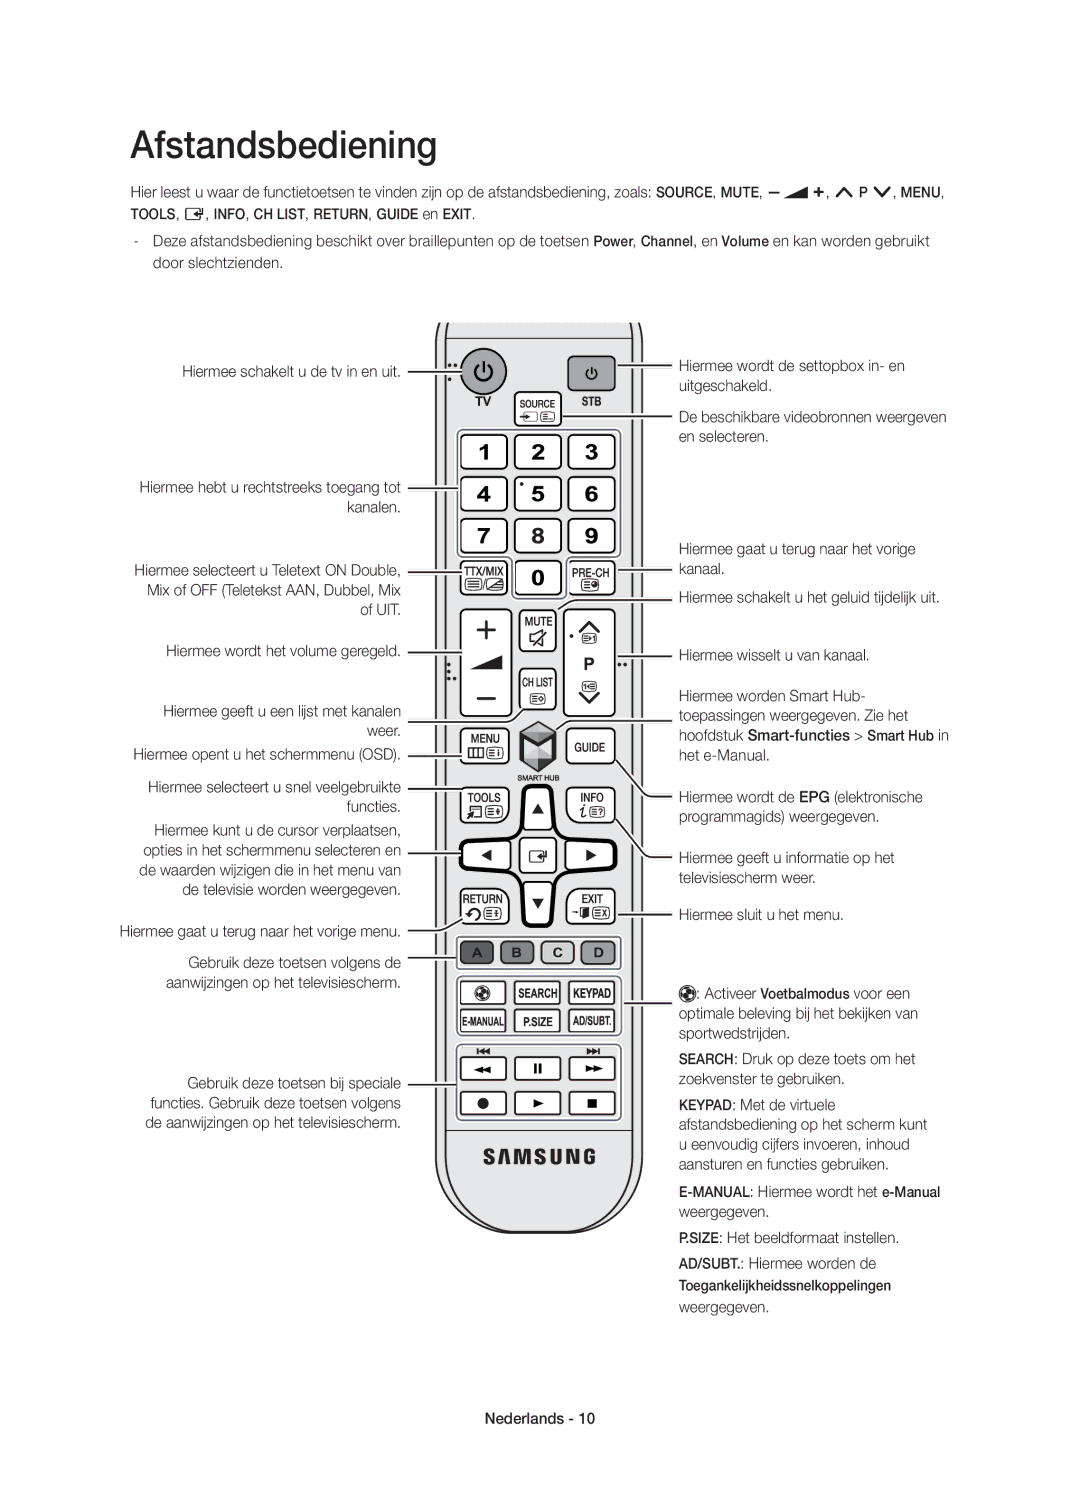 Samsung UE55HU7100SXZG manual Afstandsbediening, Hiermee gaat u terug naar het vorige menu, Weergegeven Nederlands 